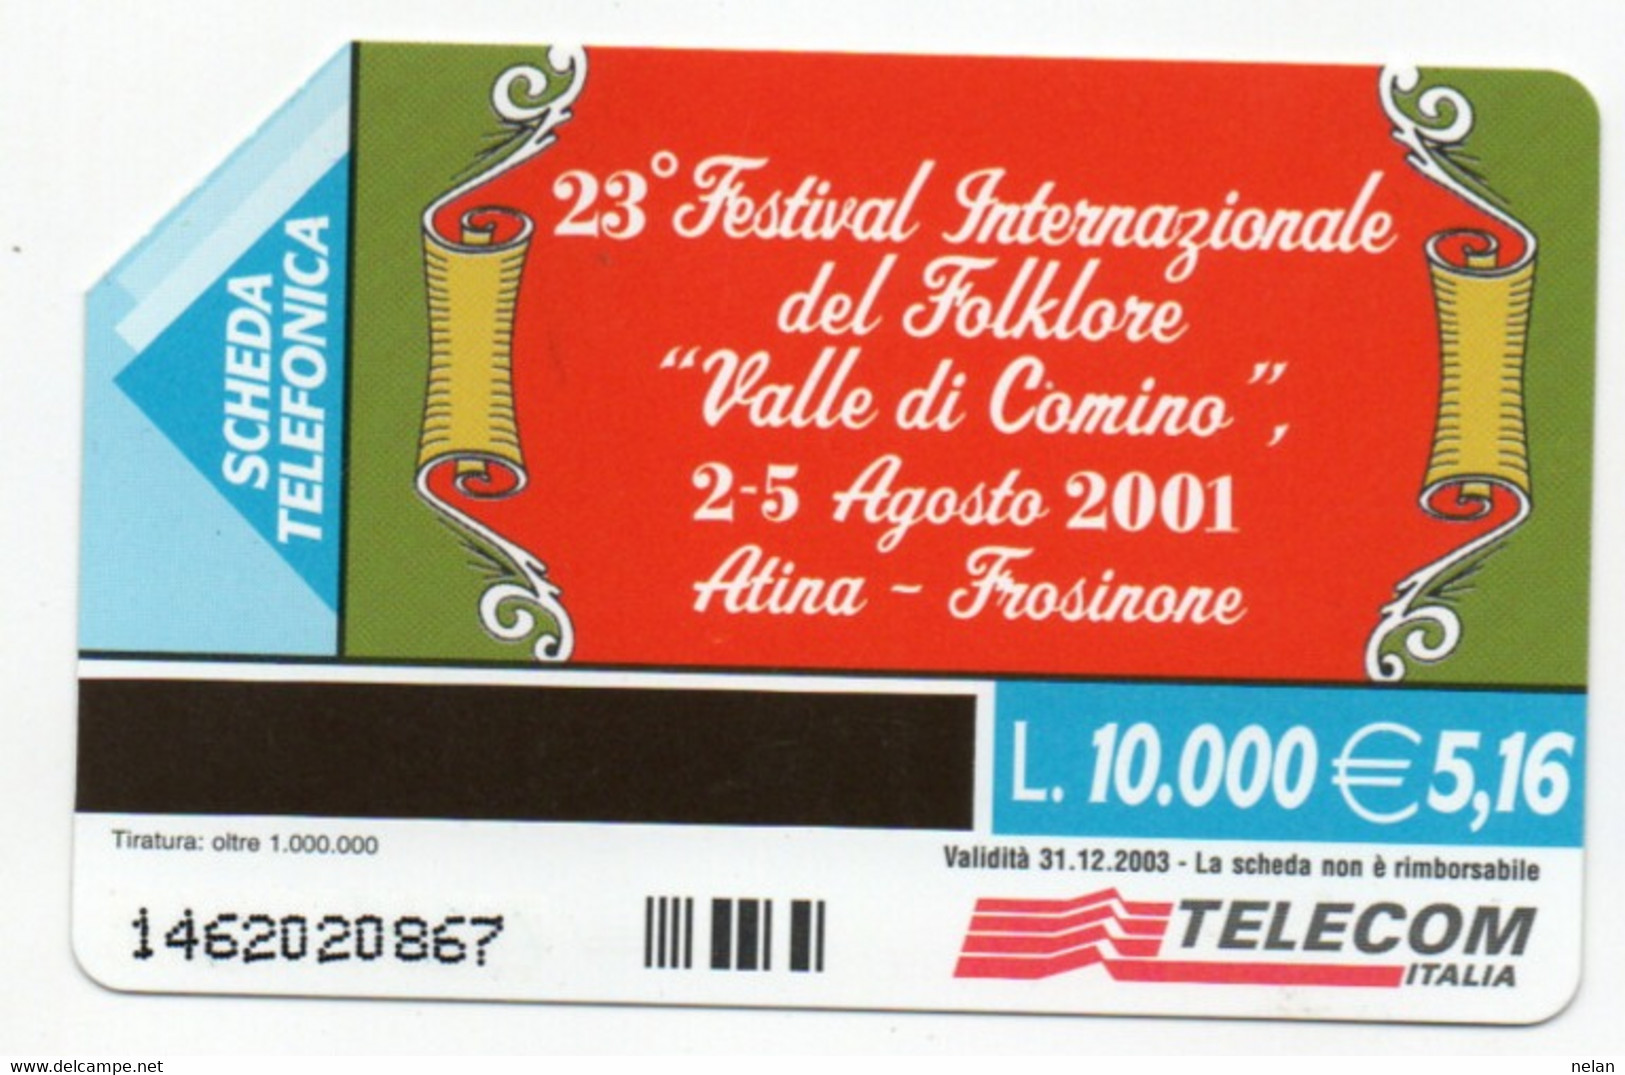 ITALIA - TELECOM - 23 FESTIVAL INTERNAZIONALE DEL FOLKLORE VALLE DI COMINO 2001 - ATINA - FROSINONE - Culture